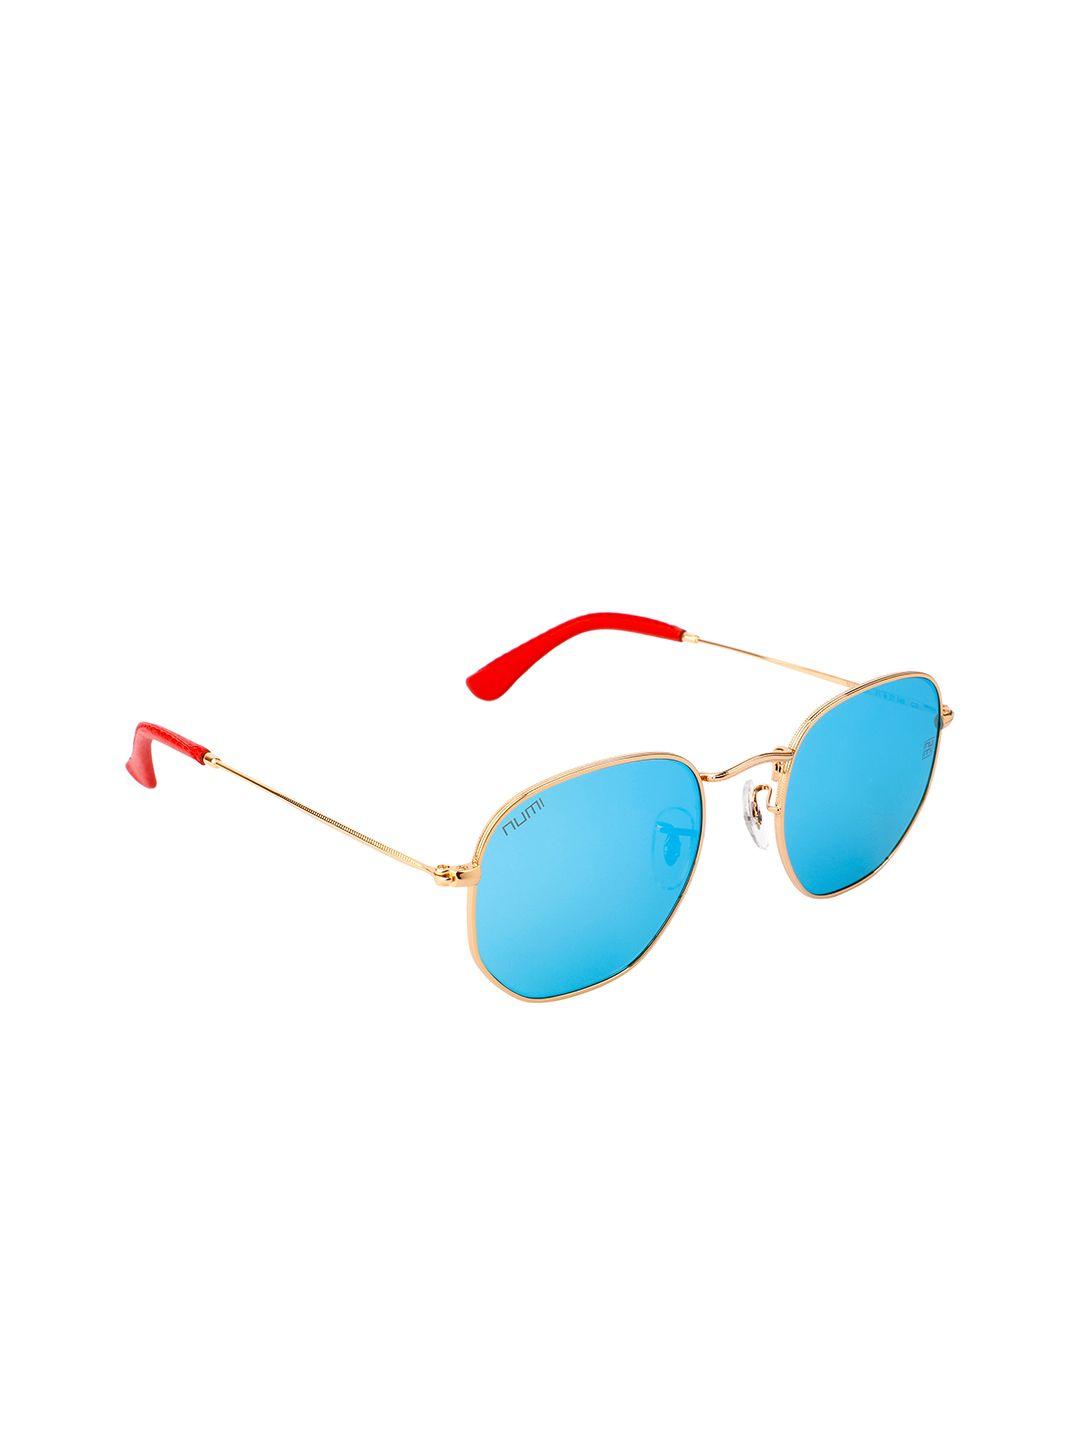 numi noir unisex blue full rim uv protected rectangle sunglasses